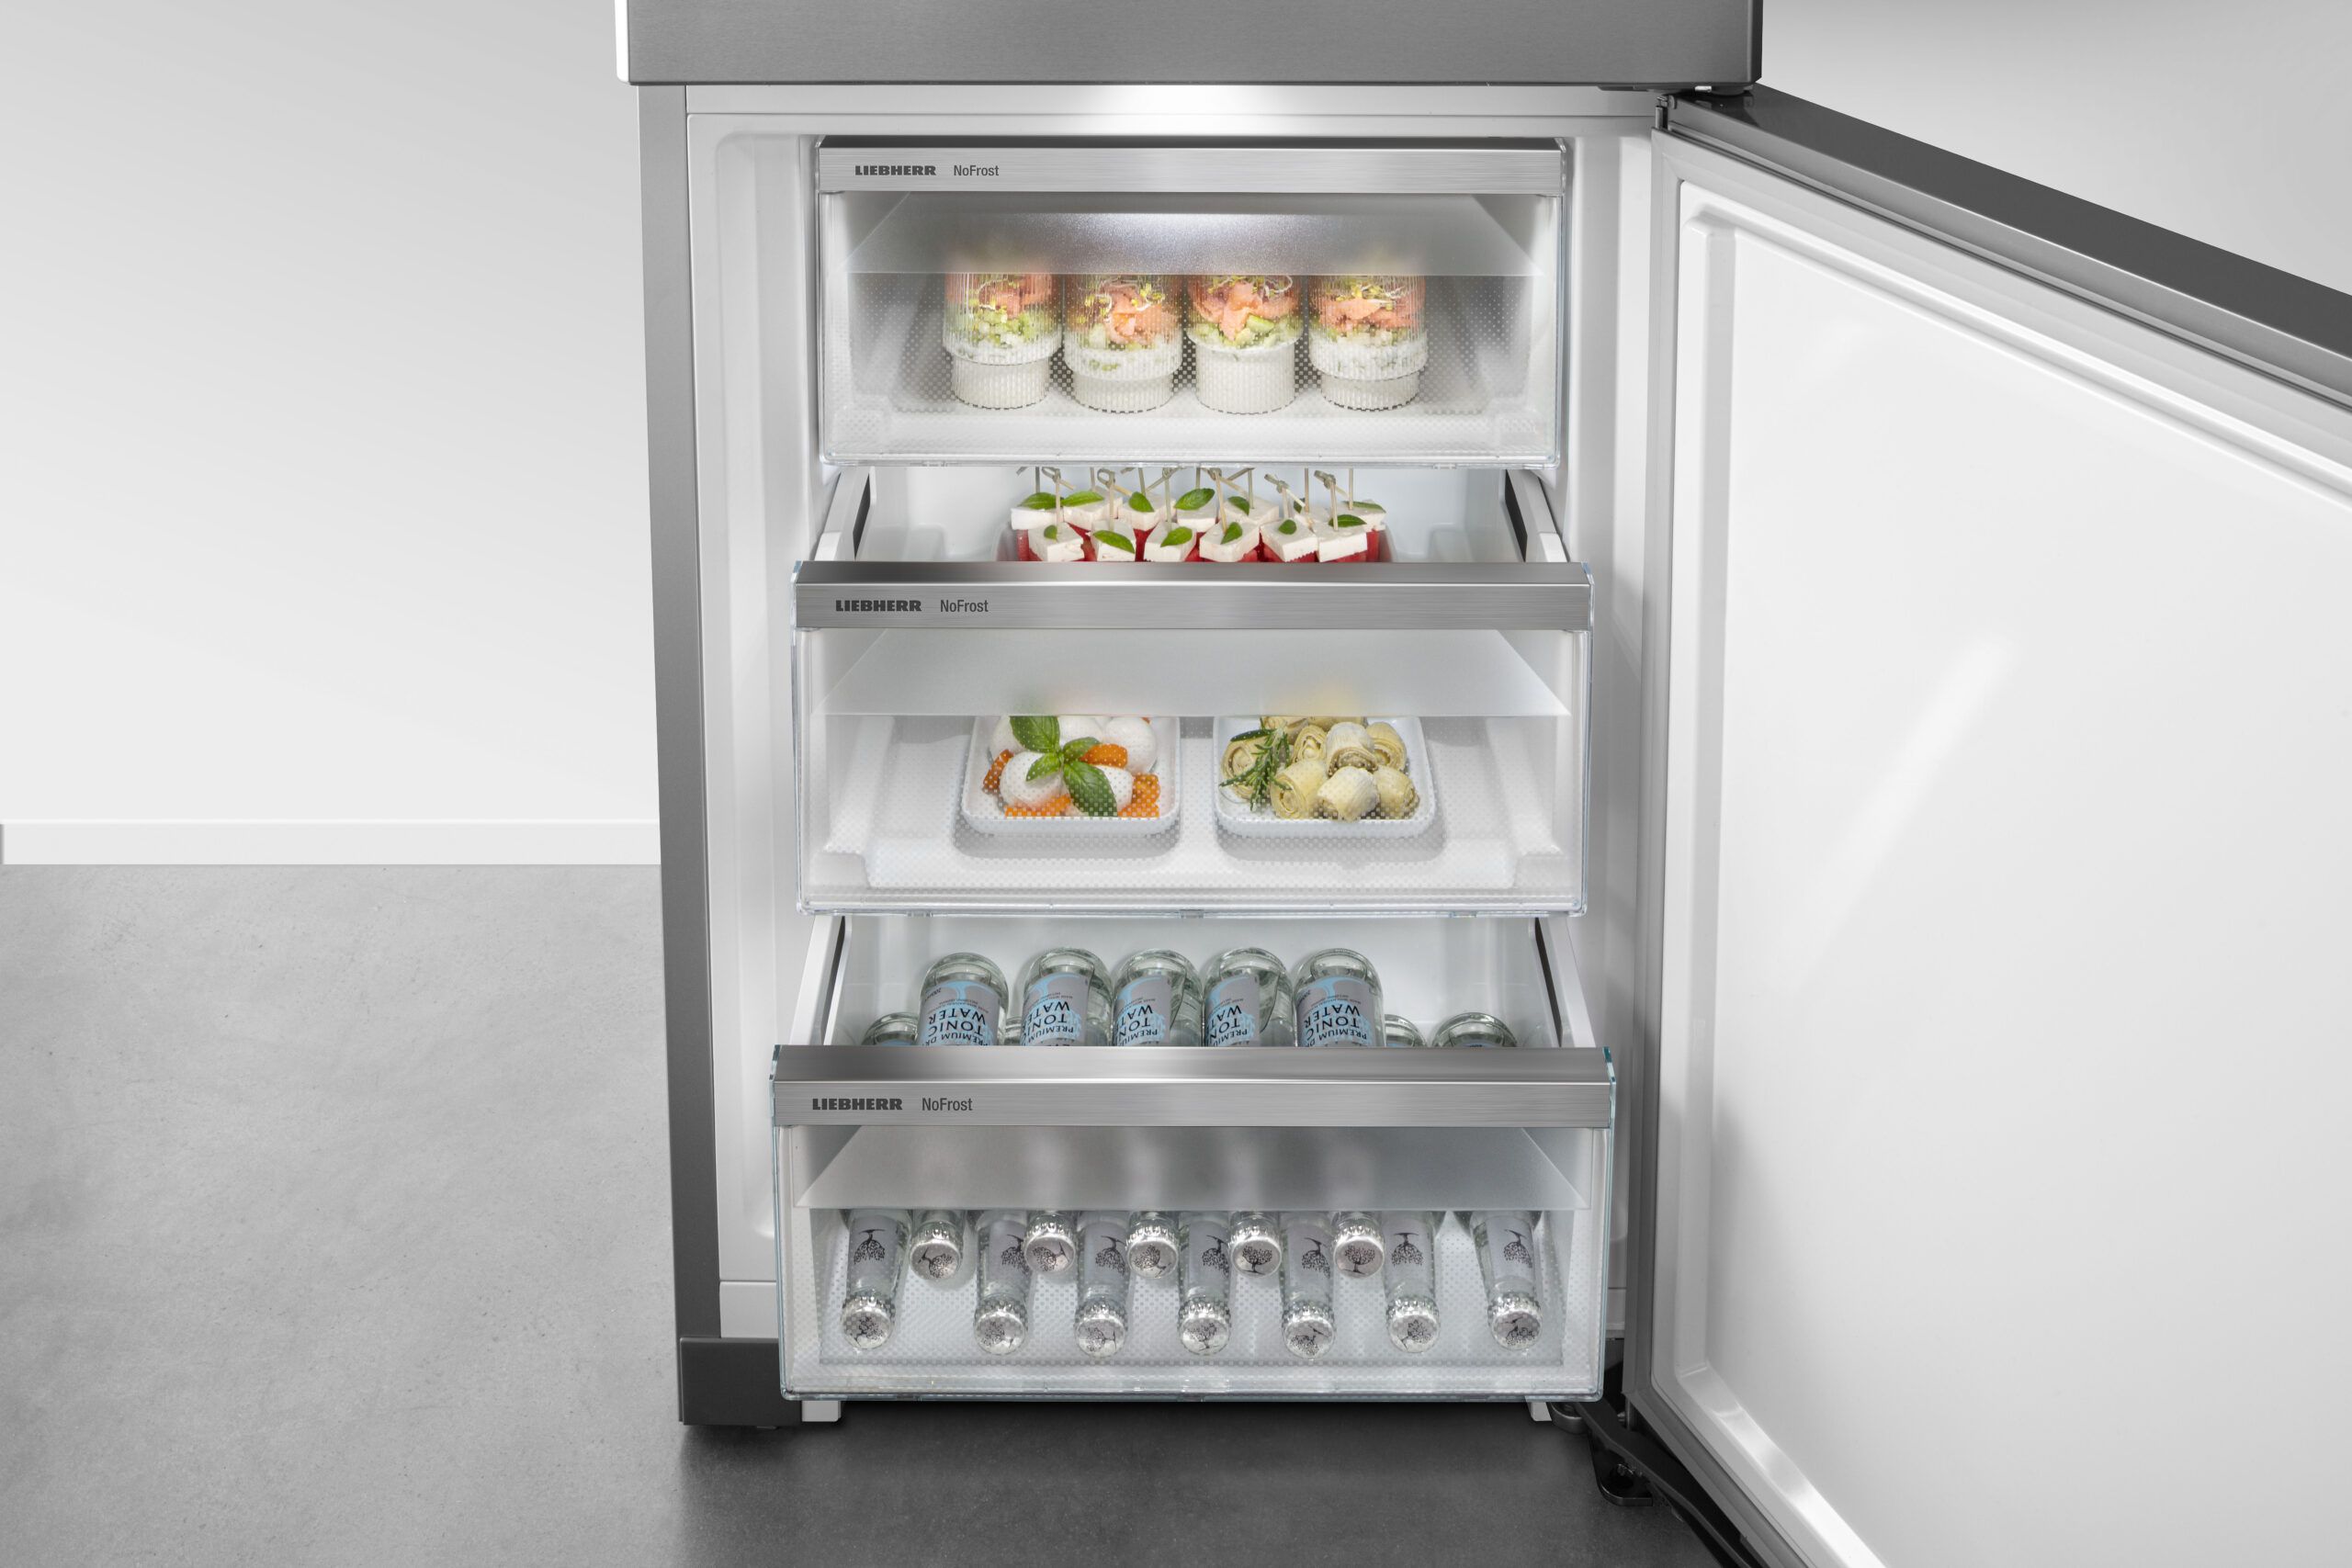 LIEBHERR - Réfrigérateur congélateur bas CNSDC5223-20